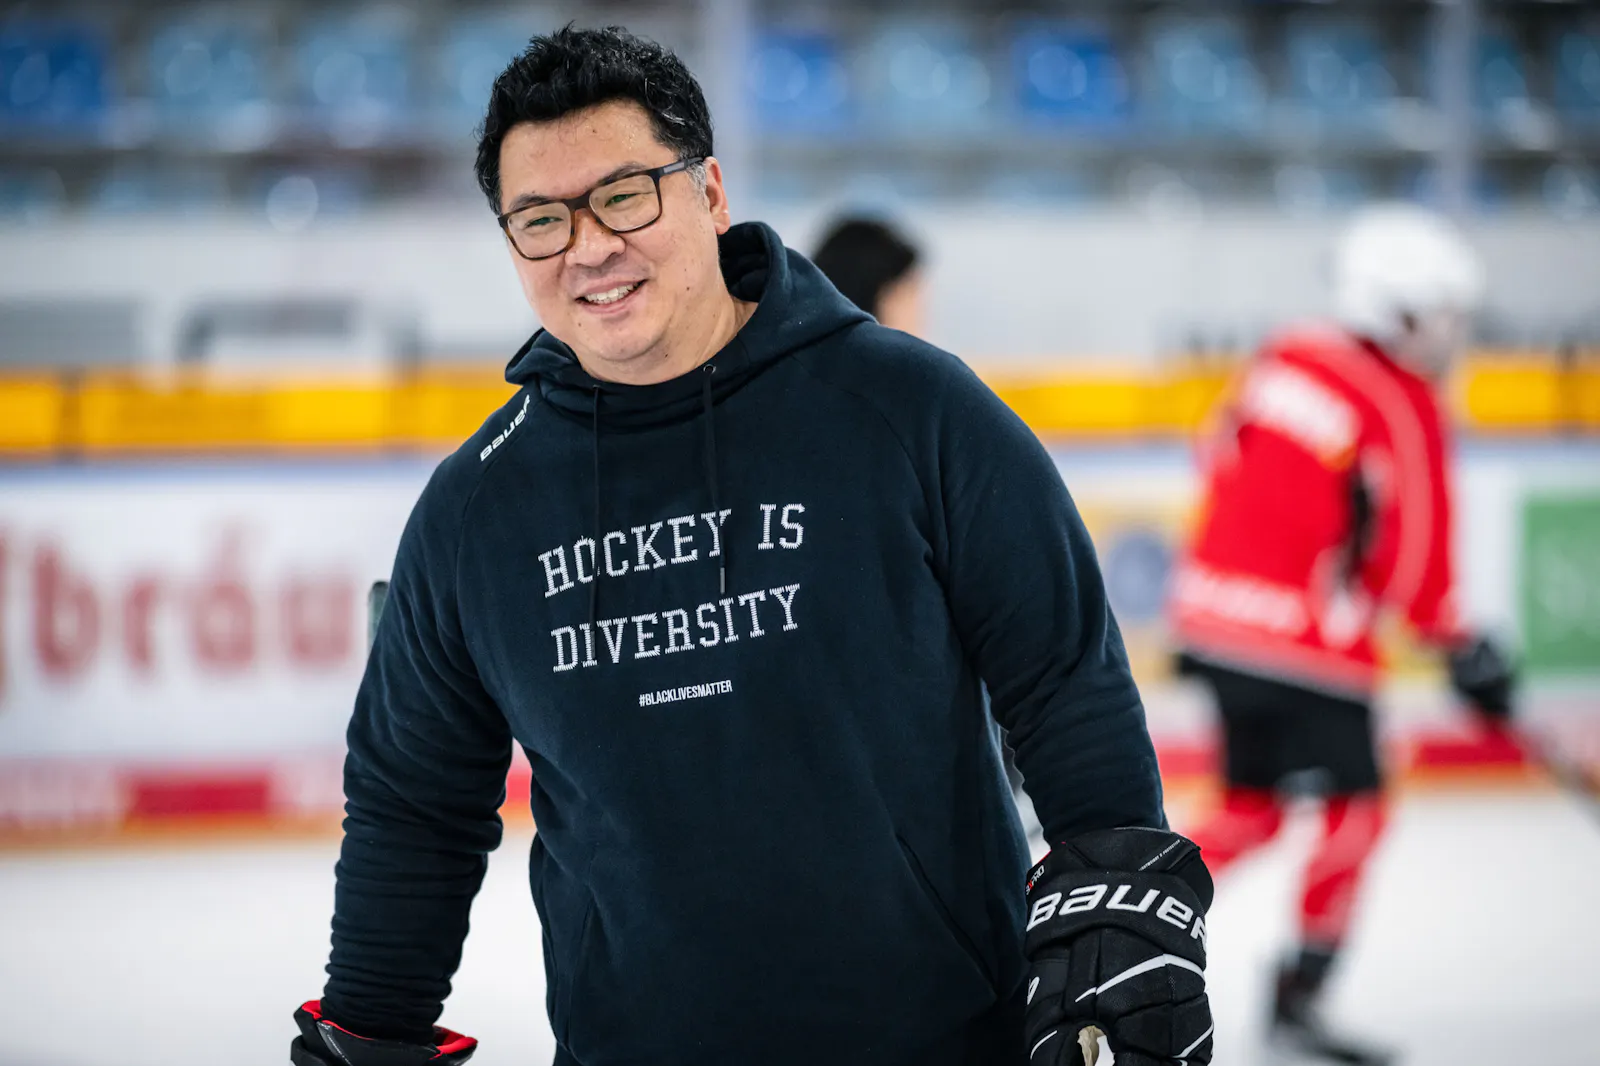 Martin Hyun steht auf dem Eis und lächelt. Er trägt einen schwarzen Hoodie mit der Aufschrift "Hockey is Diversity".